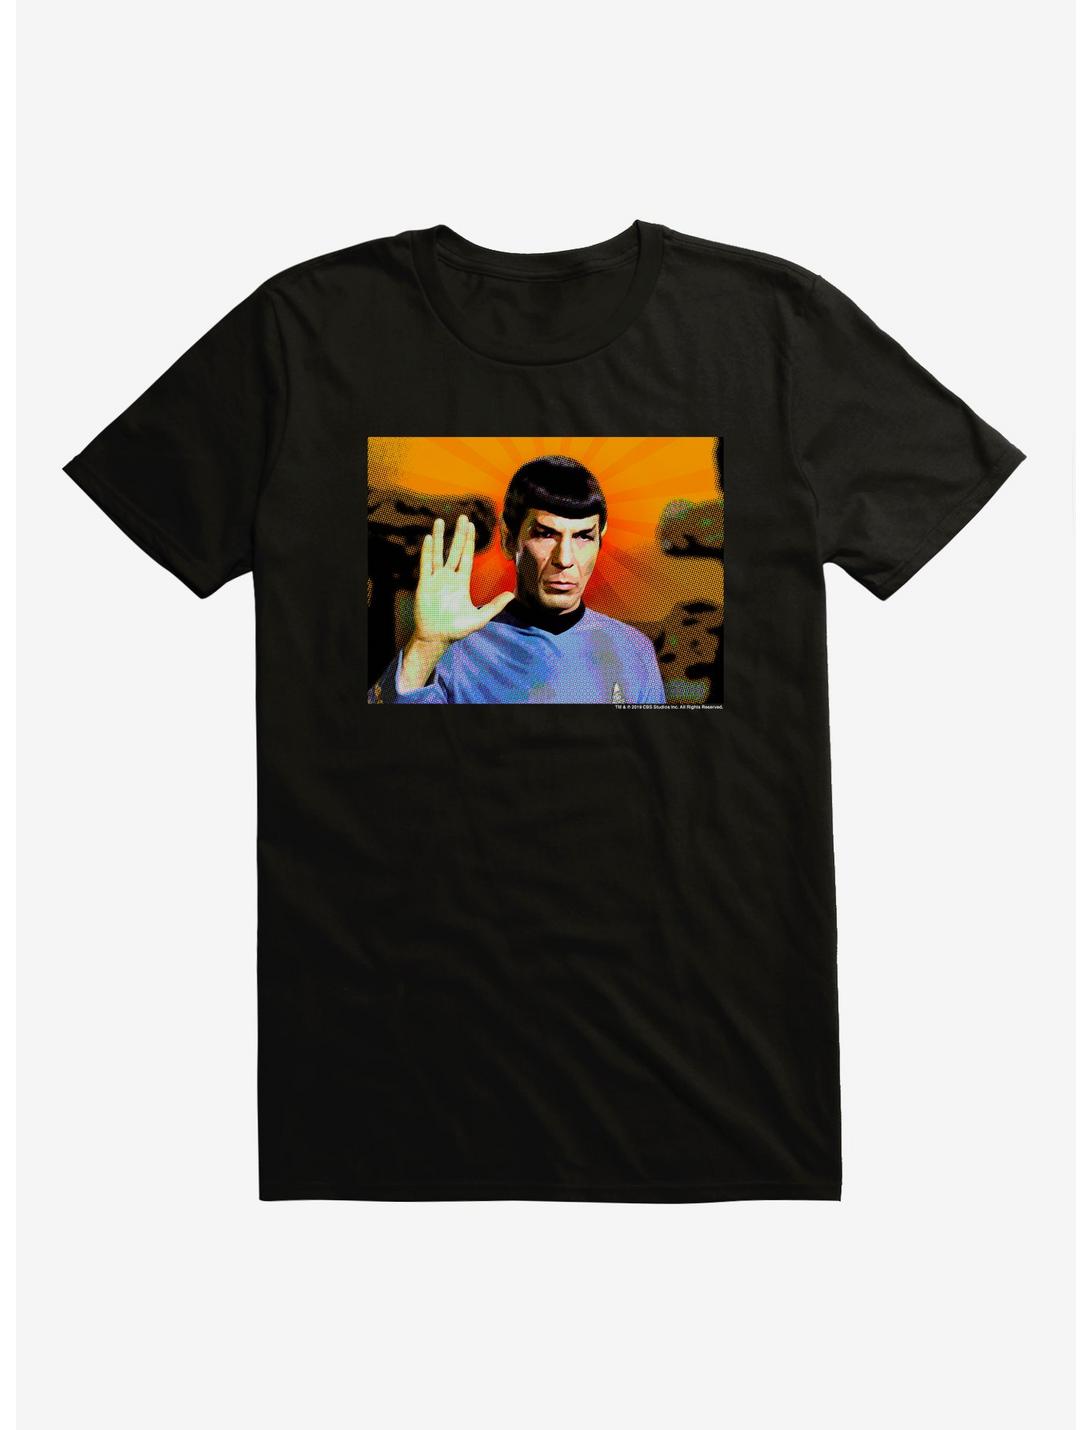 Star Trek Spock Salute T-Shirt, , hi-res